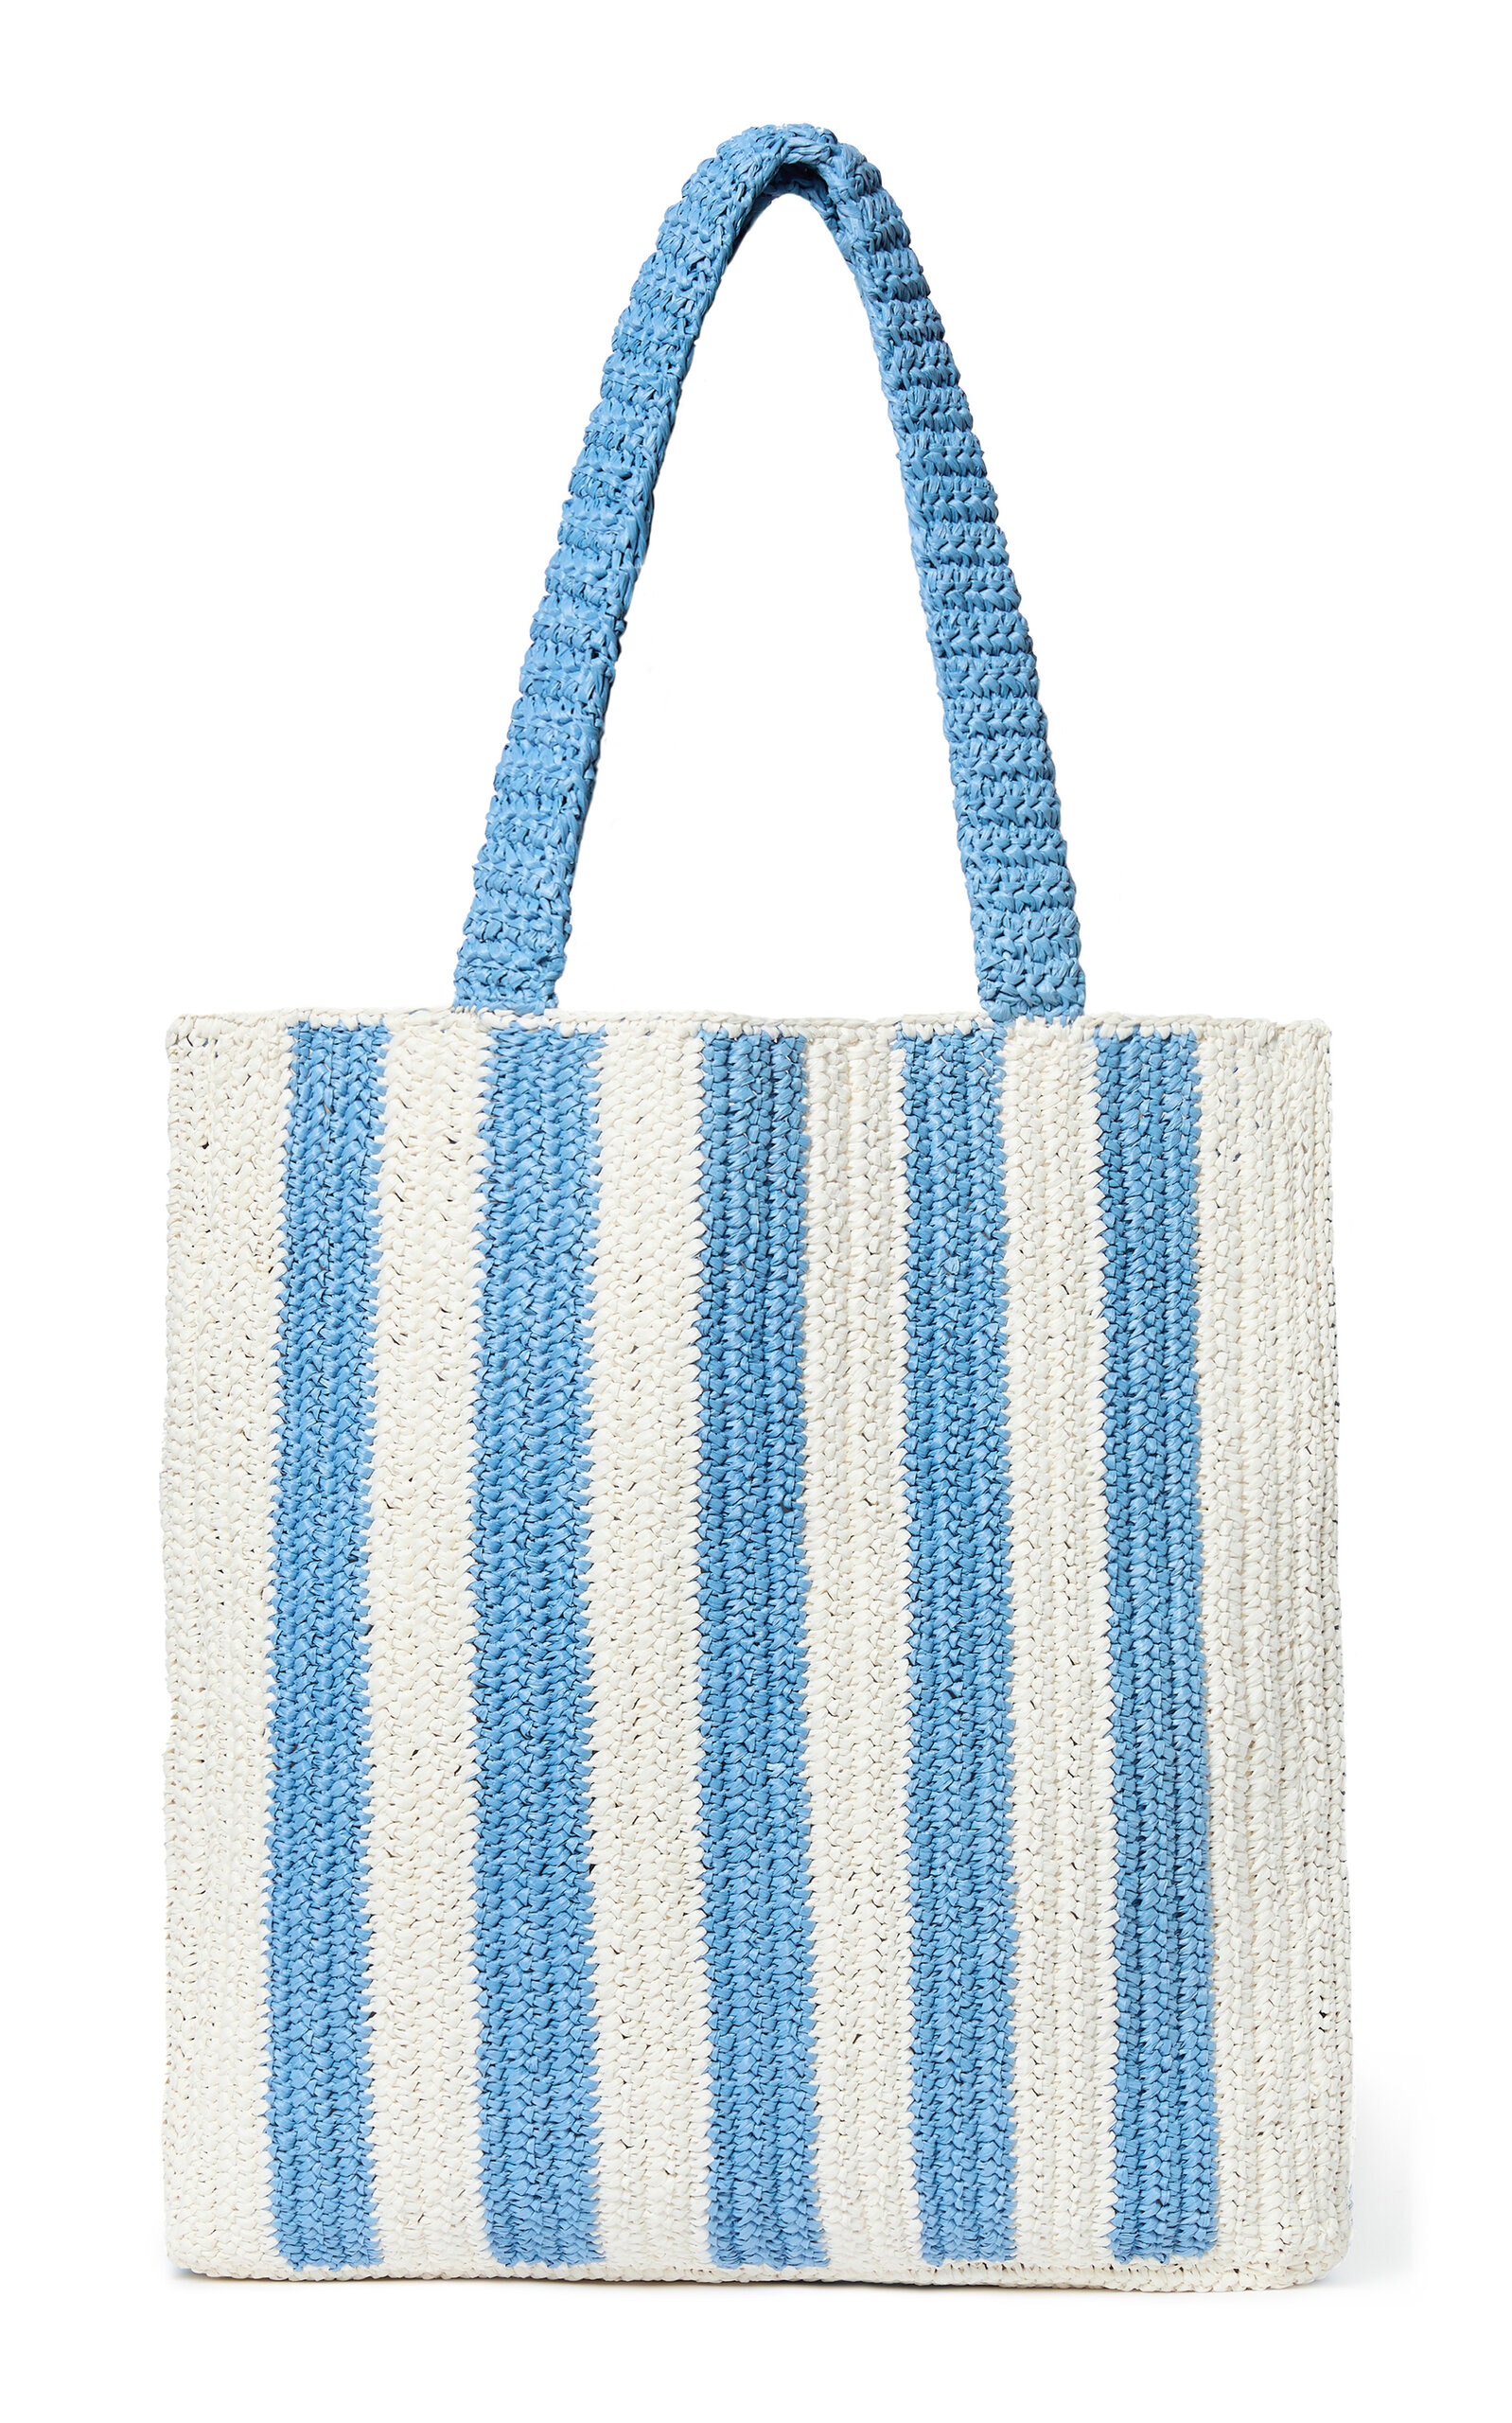 Orion Crocheted Raffia Tote Bag